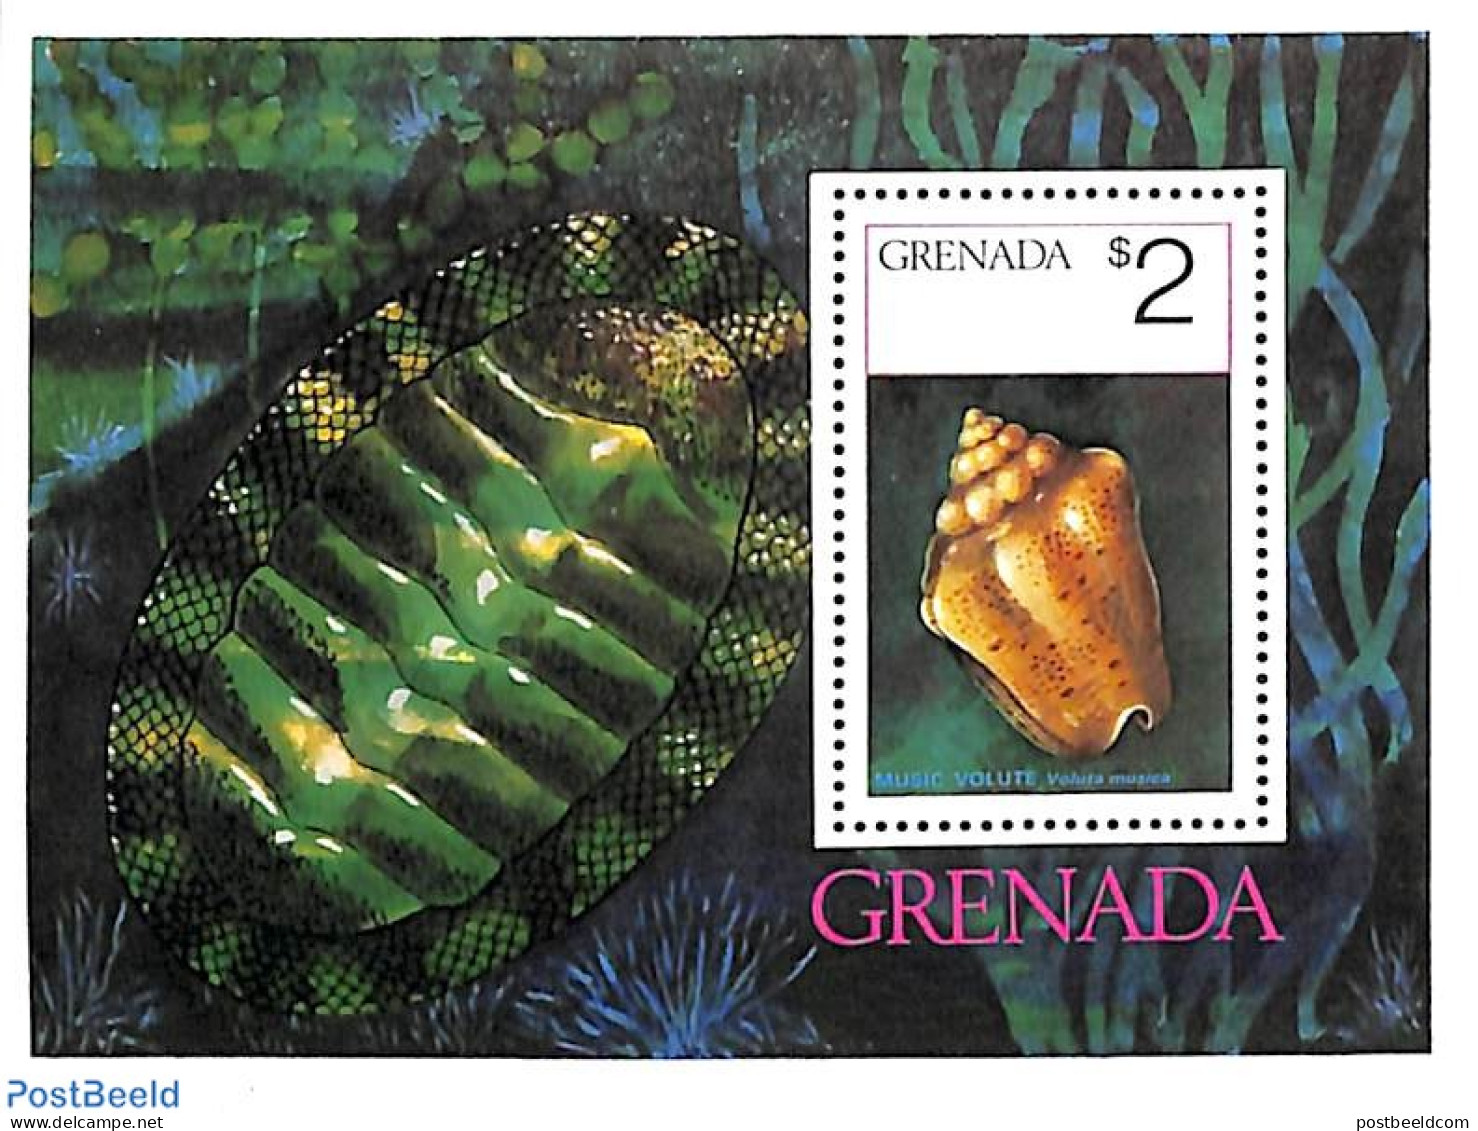 Grenada 1975 Shells S/s, Mint NH, Nature - Shells & Crustaceans - Vita Acquatica